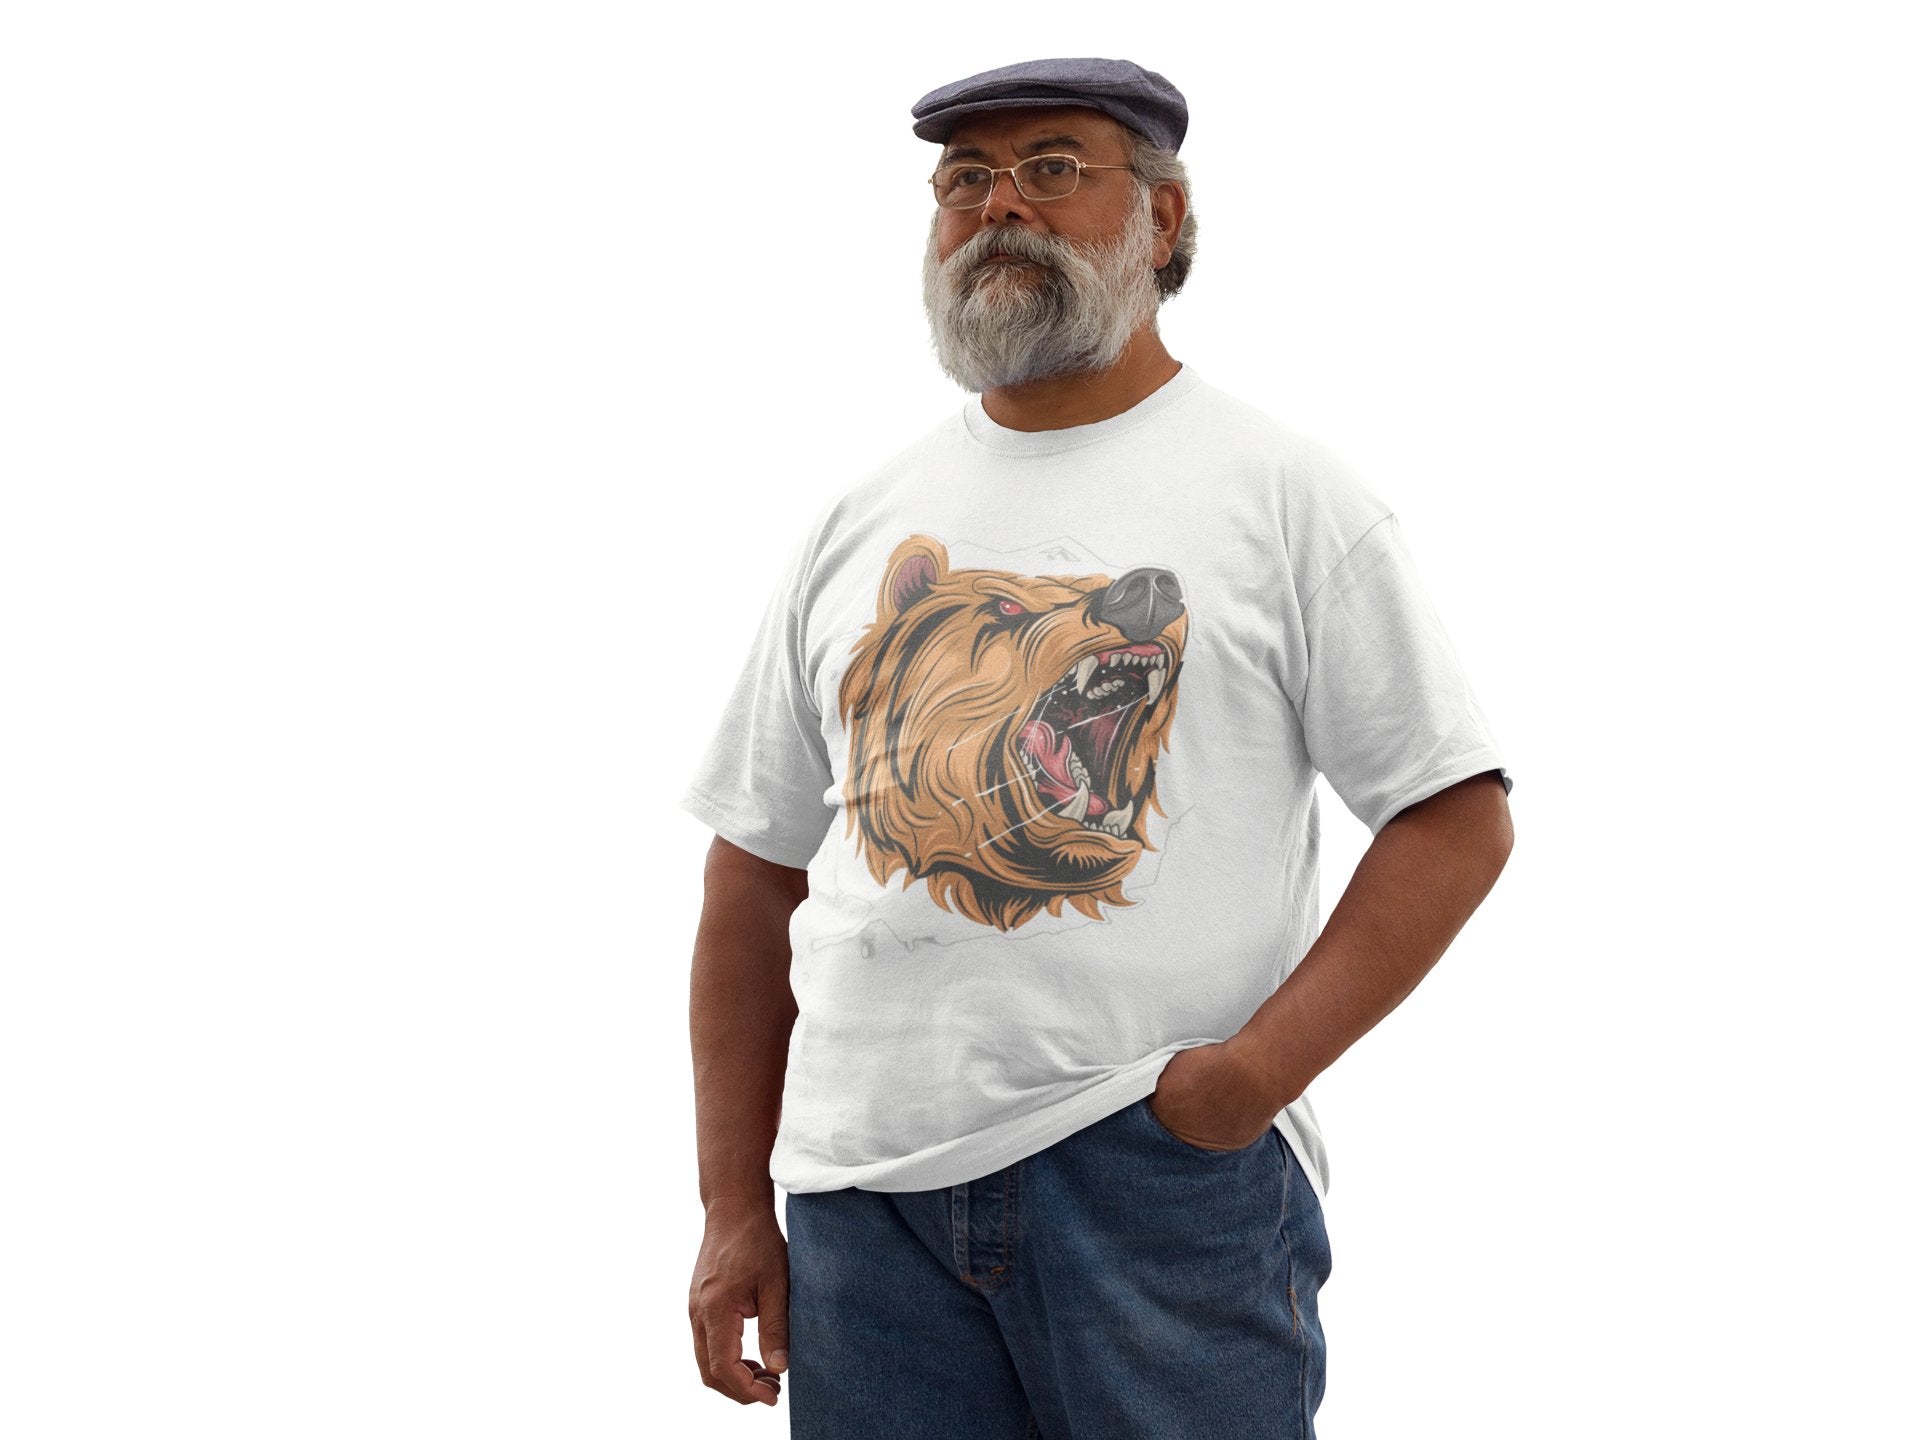 Roaring Bear T-Shirt - Wow T-Shirts